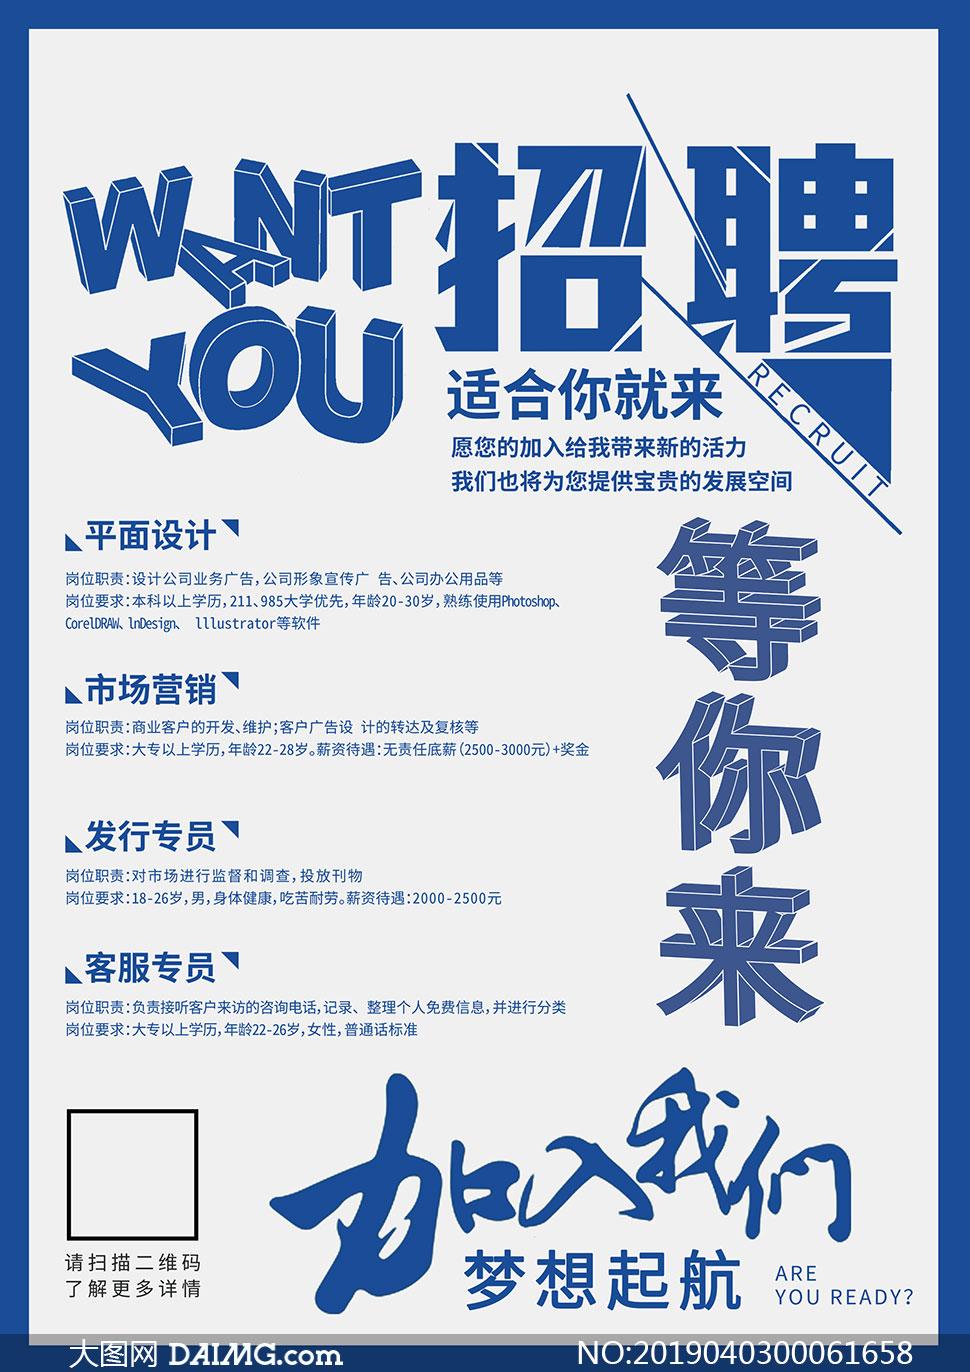 招聘设计信息_招聘信息海报图片 招聘信息海报设计素材 红动中国(3)